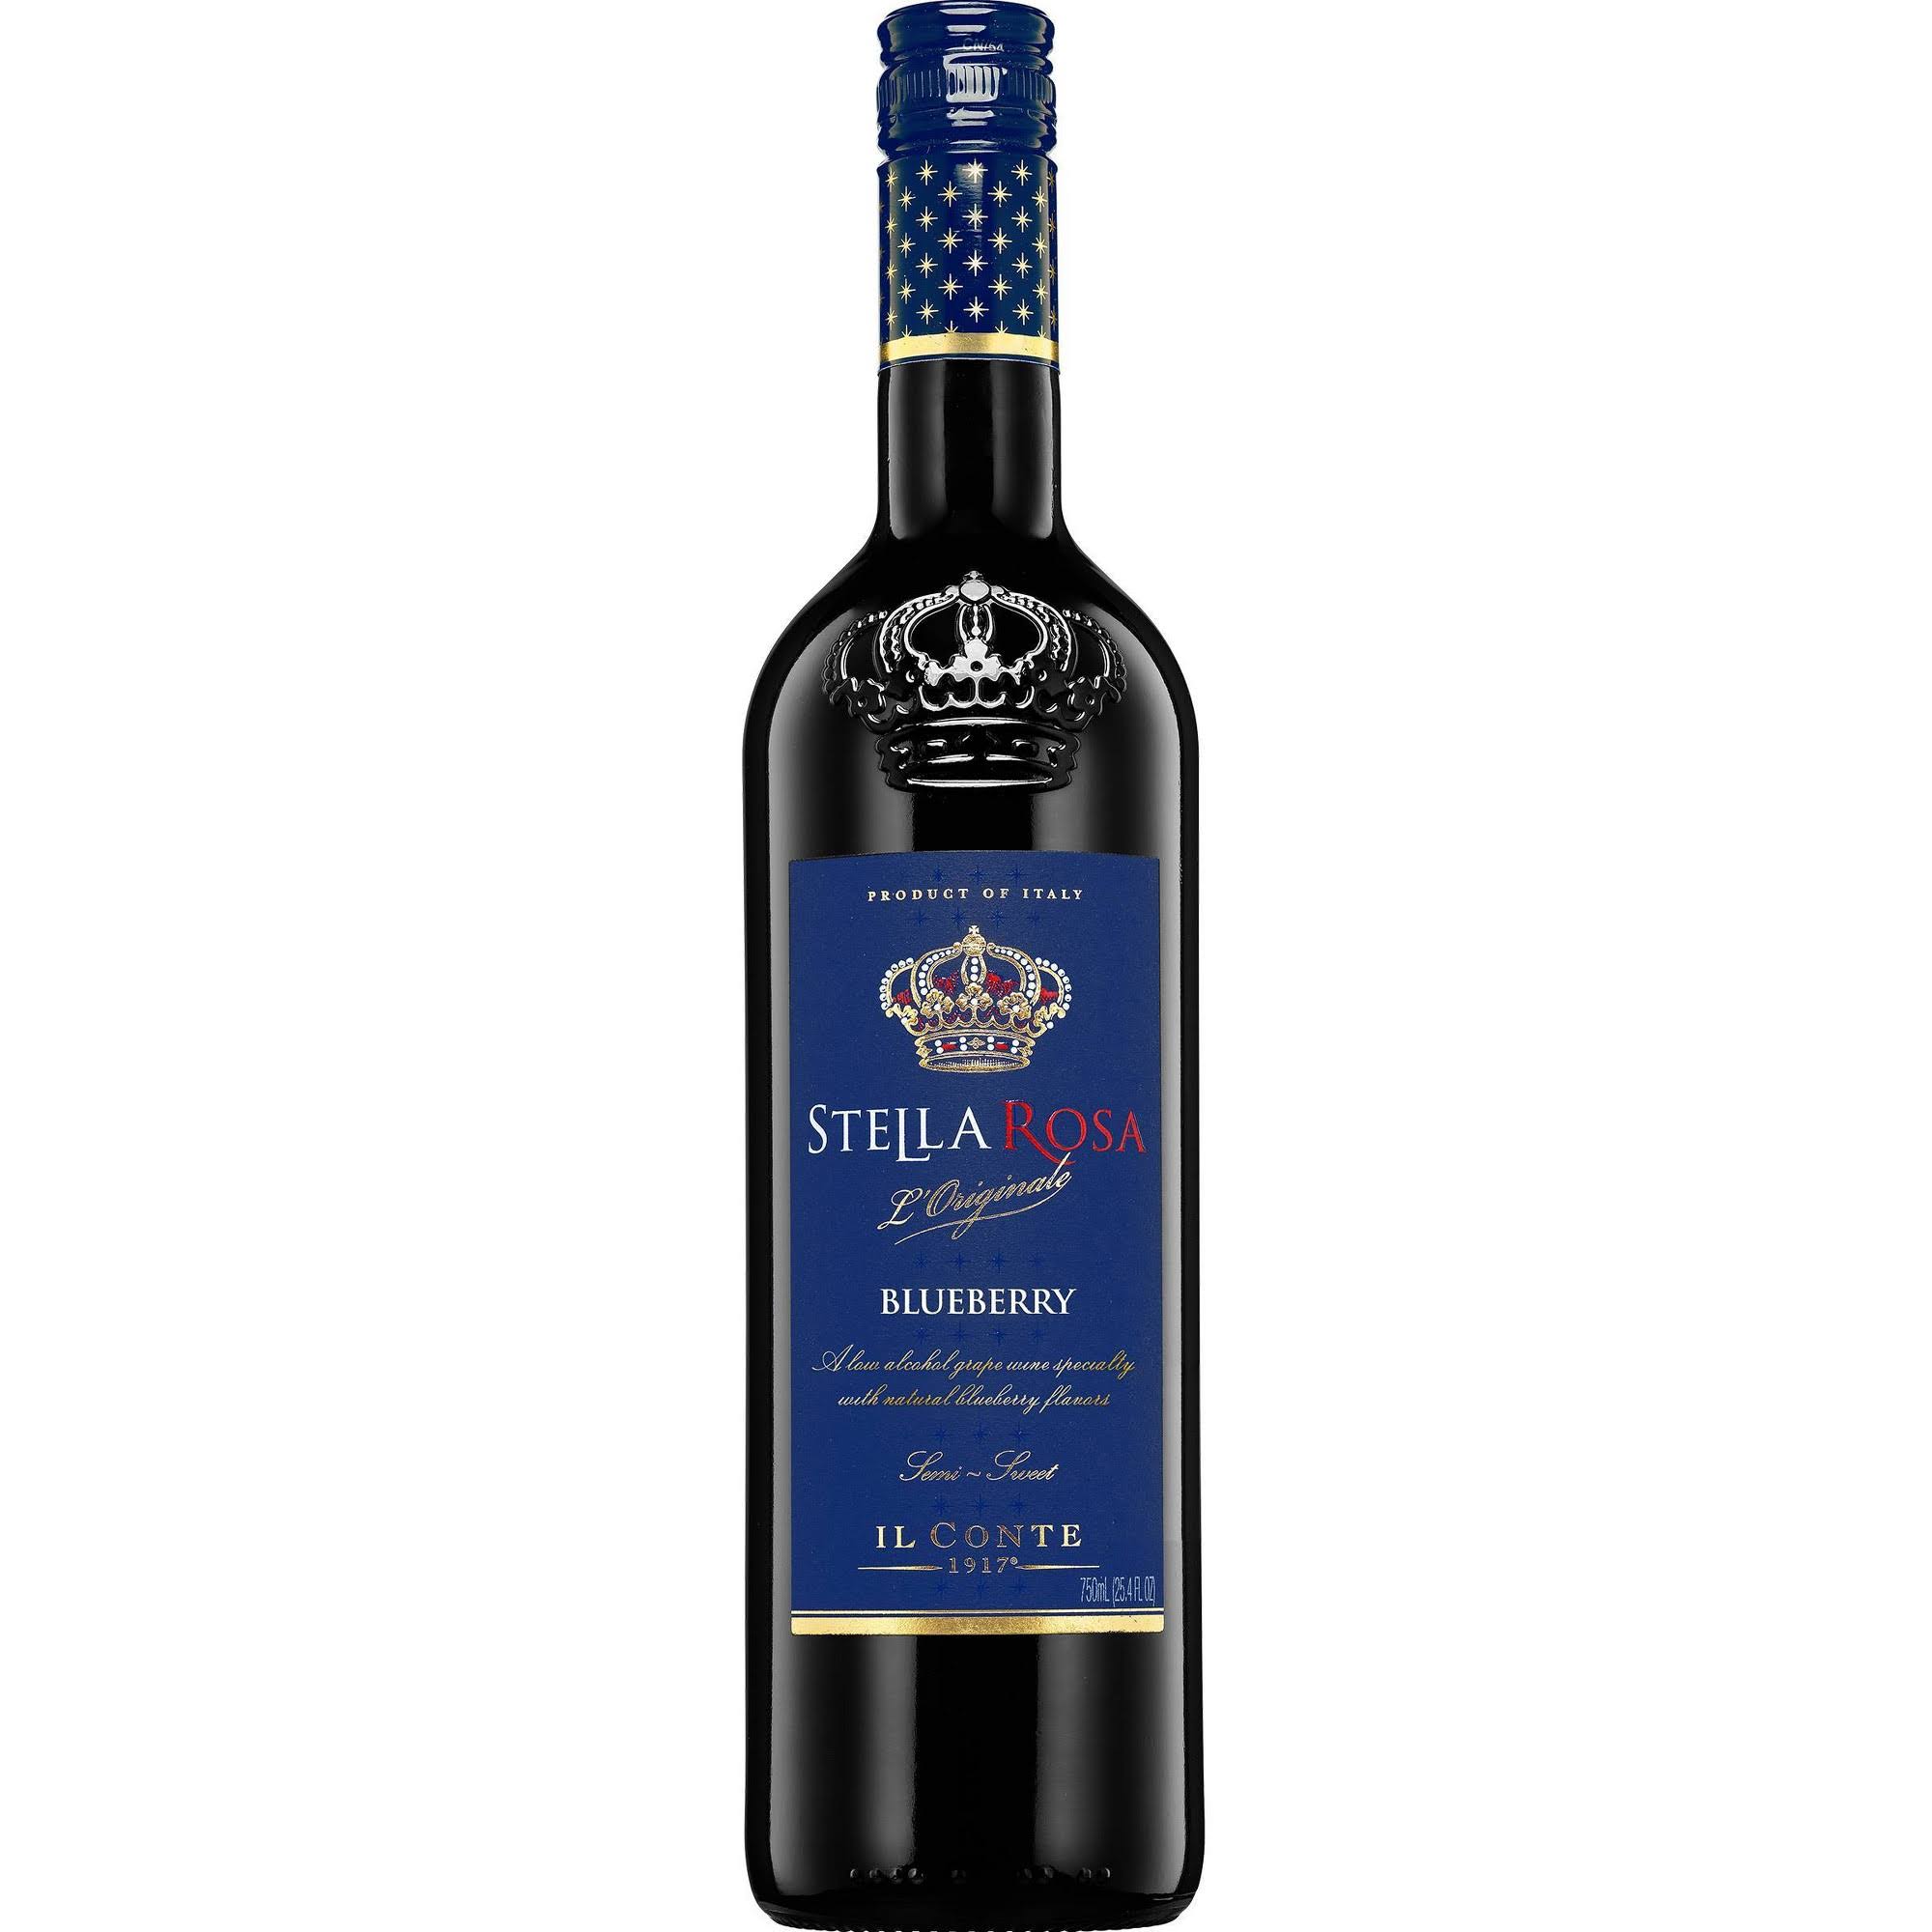 Stella Rosa Wine, Blueberry, IL Conte, 1917 - 750 mL (25.4 fl oz)